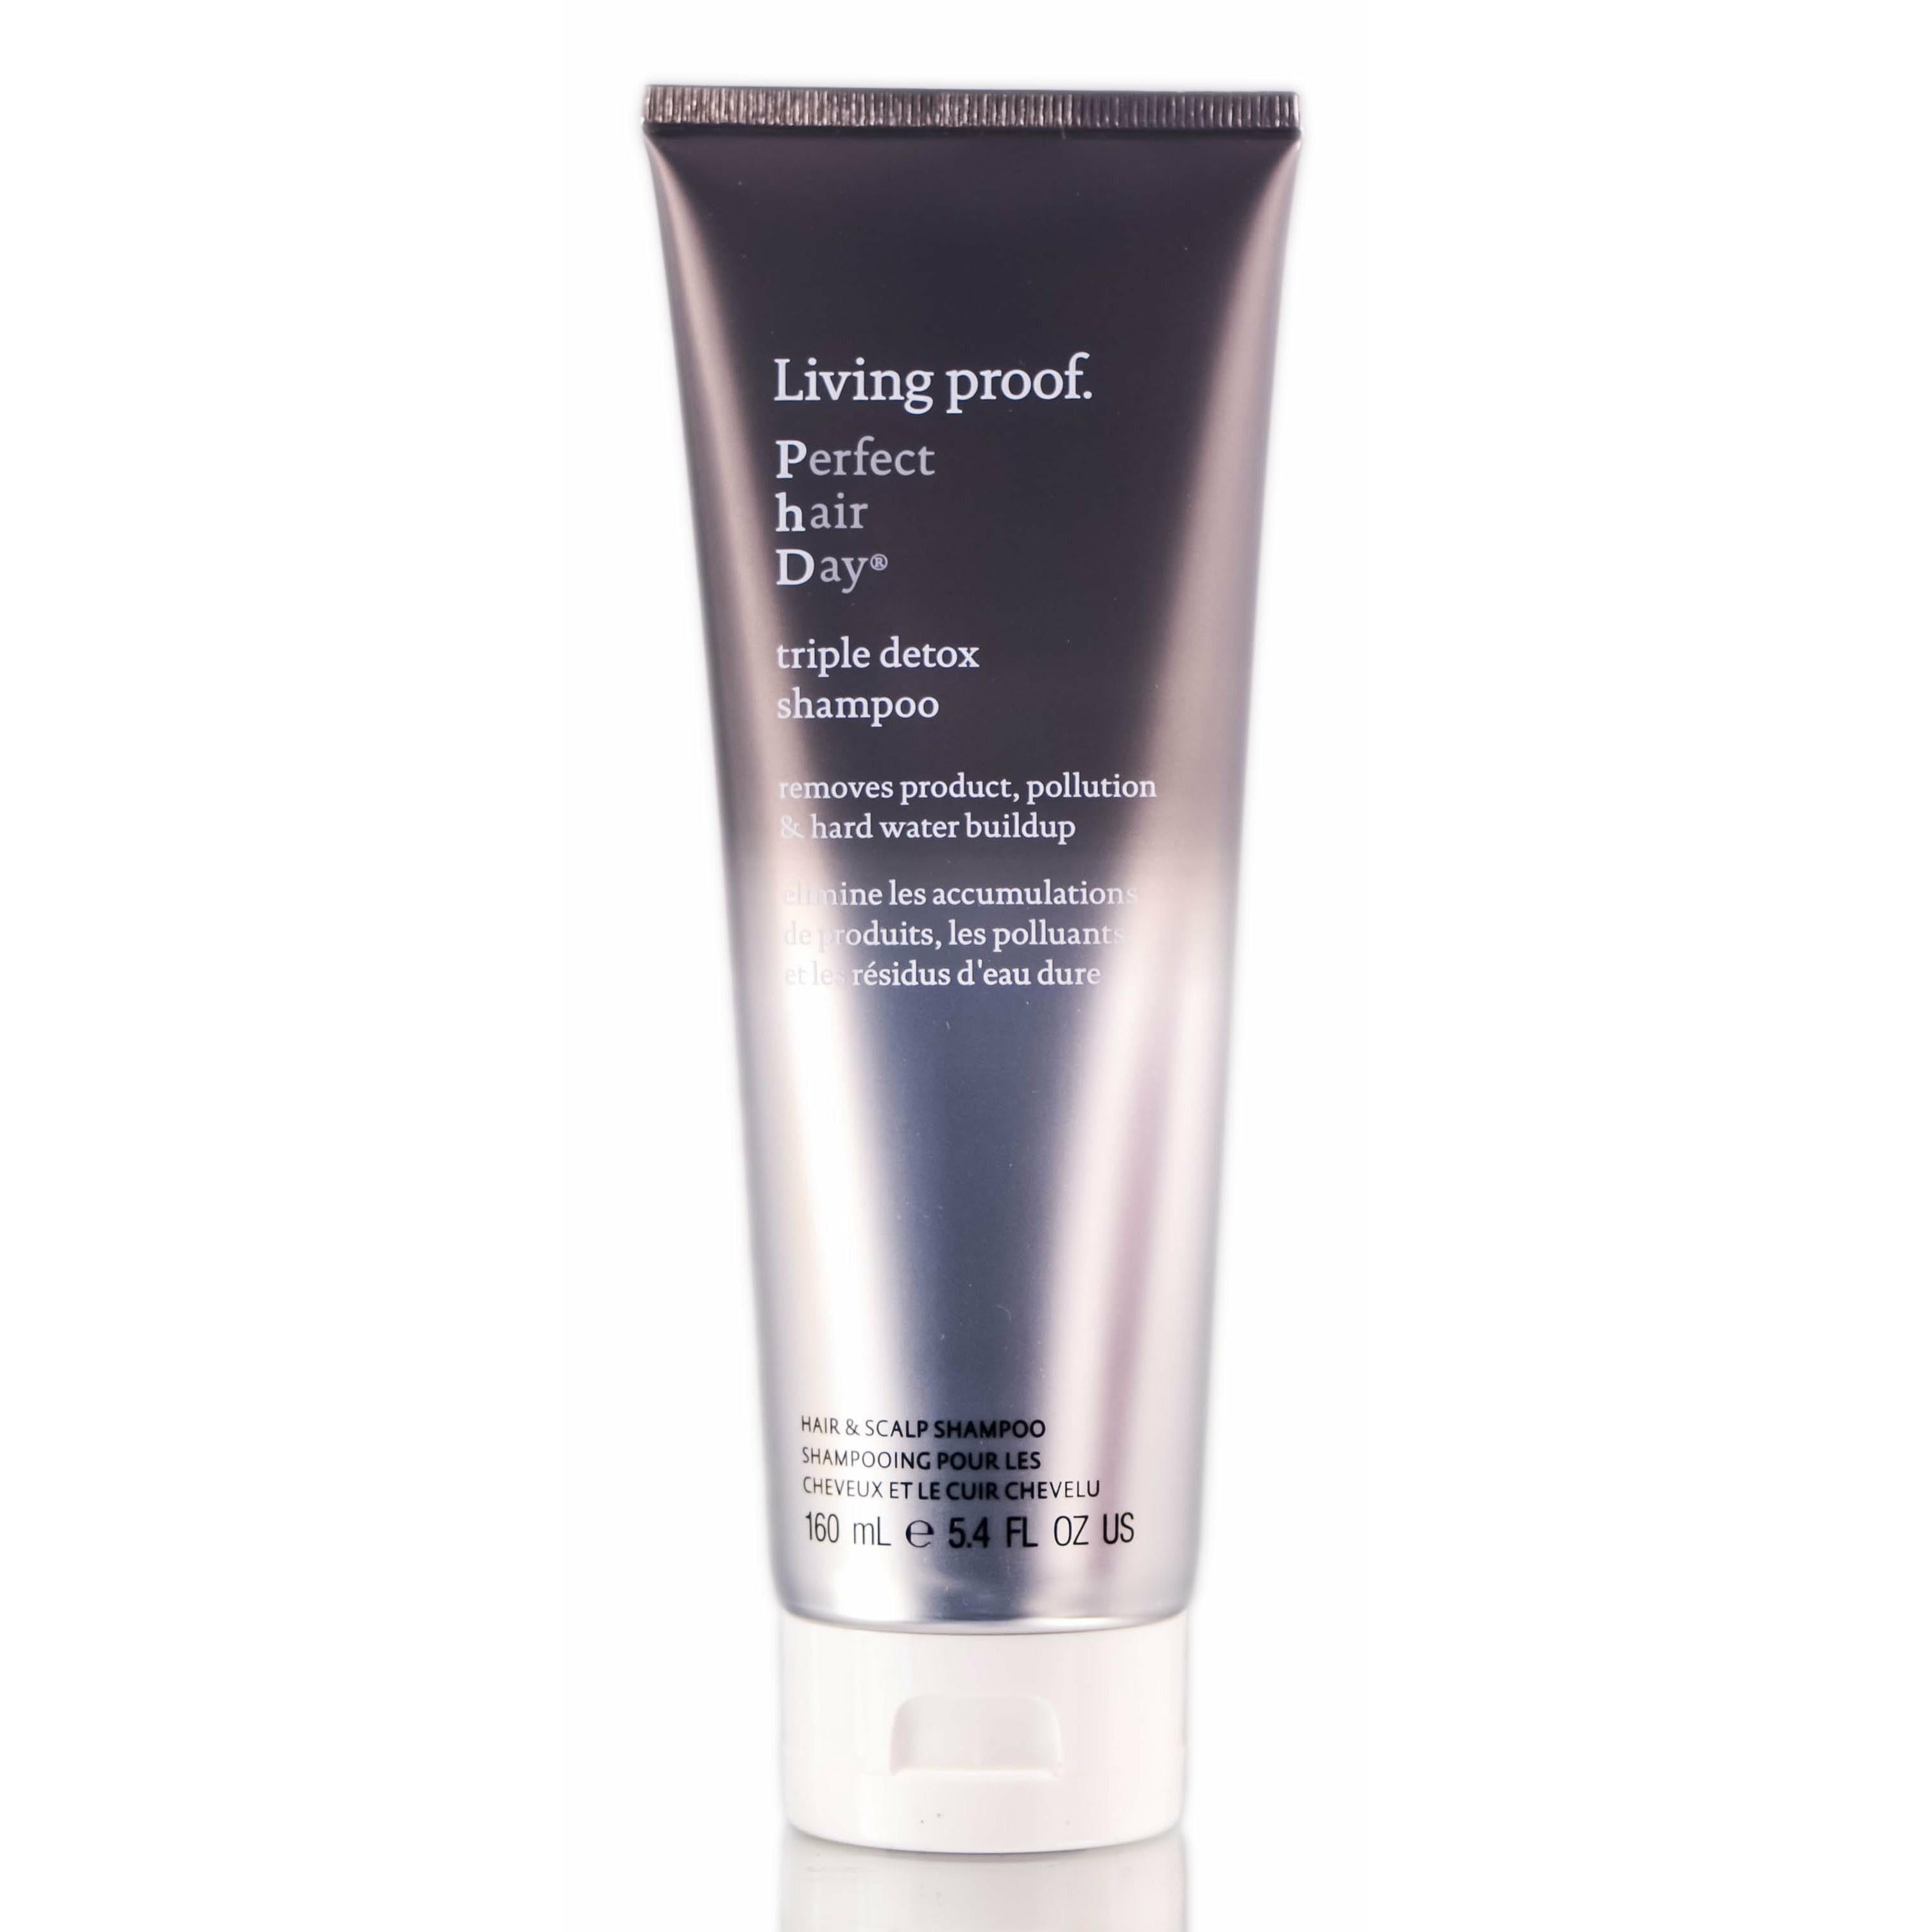 Living Proof Perfect hair DayTriple Detox Shampoo 5.4OZ